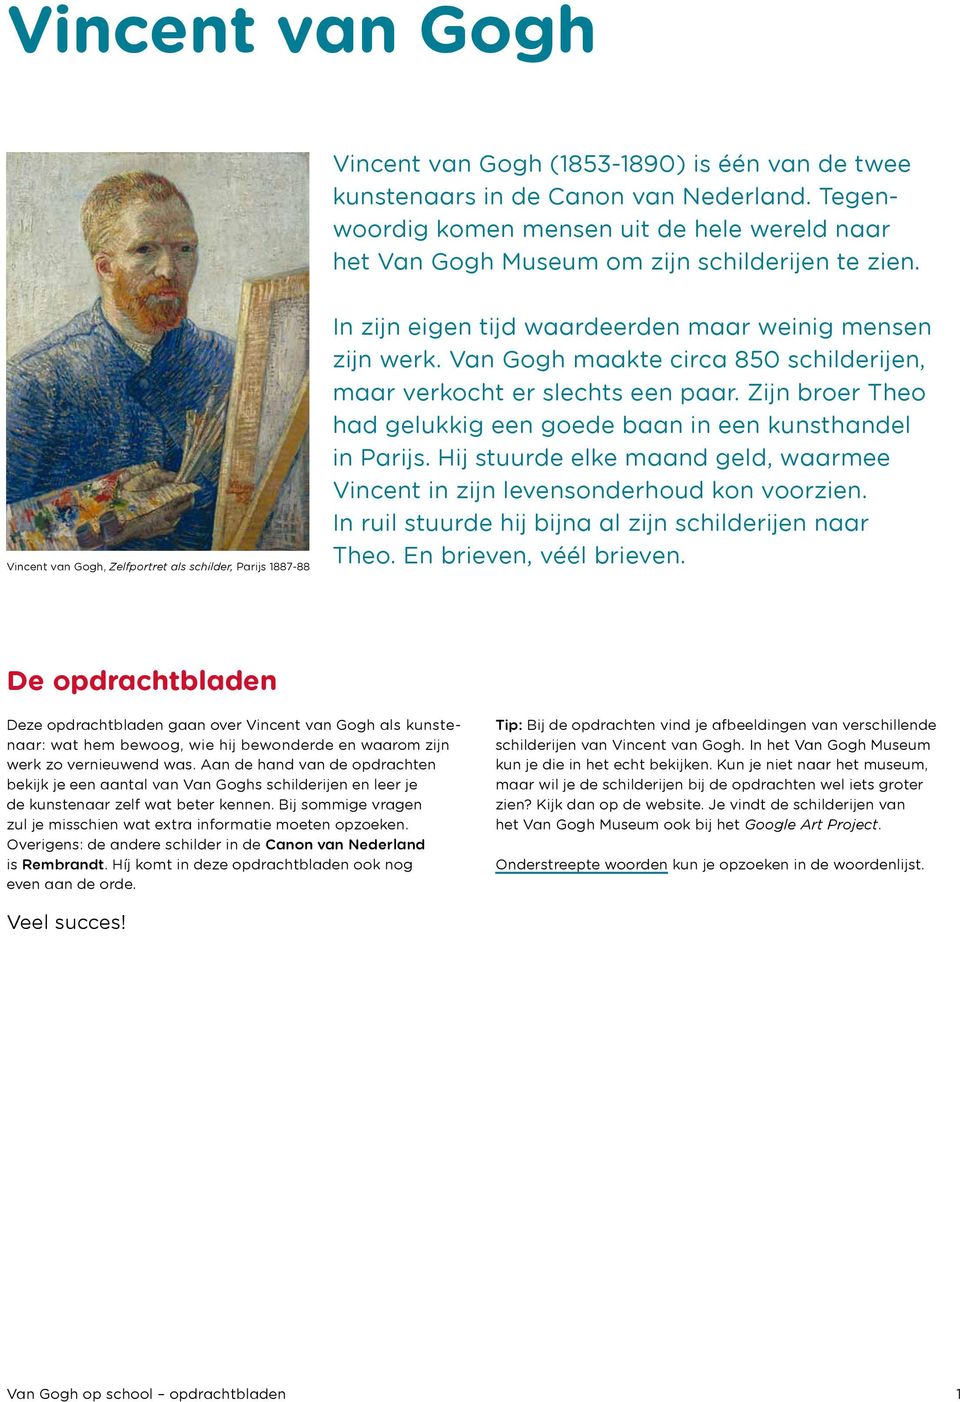 Vincent van Gogh, Zelfportret als schilder, Parijs 1887-88 In zijn eigen tijd waardeerden maar weinig mensen zijn werk. Van Gogh maakte circa 850 schilderijen, maar verkocht er slechts een paar.